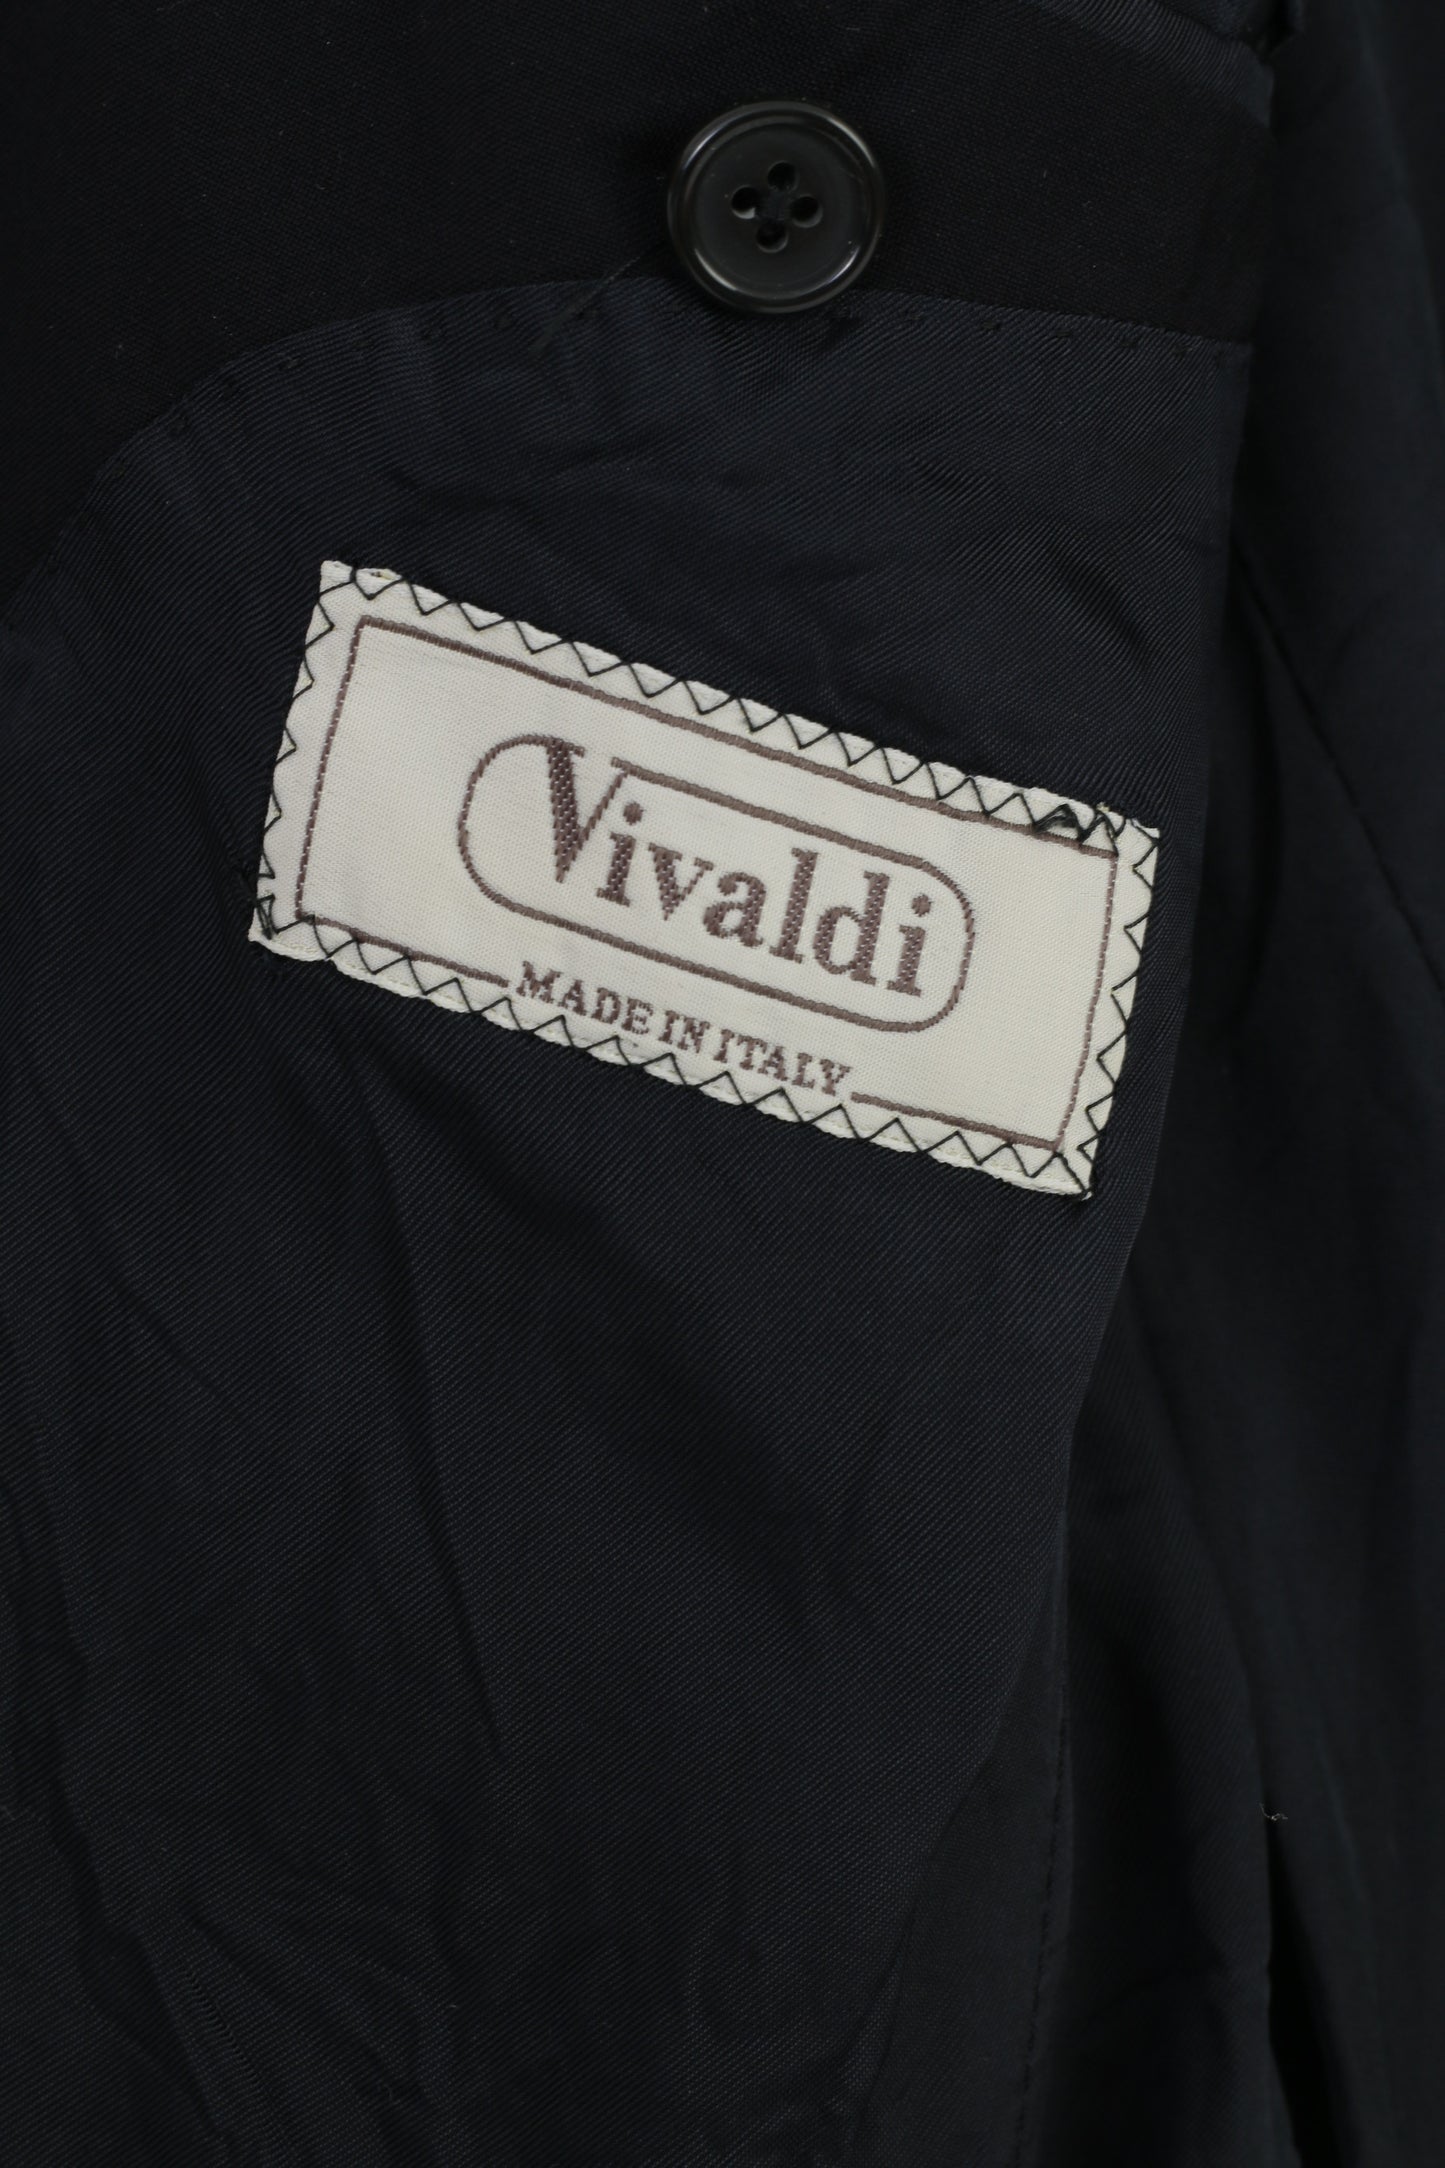 Vivaldi Men 52 Blazer Navy Blue Collar Breasted Wool Super 110'S Lanificio Mario Zegna Spa Buttons Elegant Vintage Top